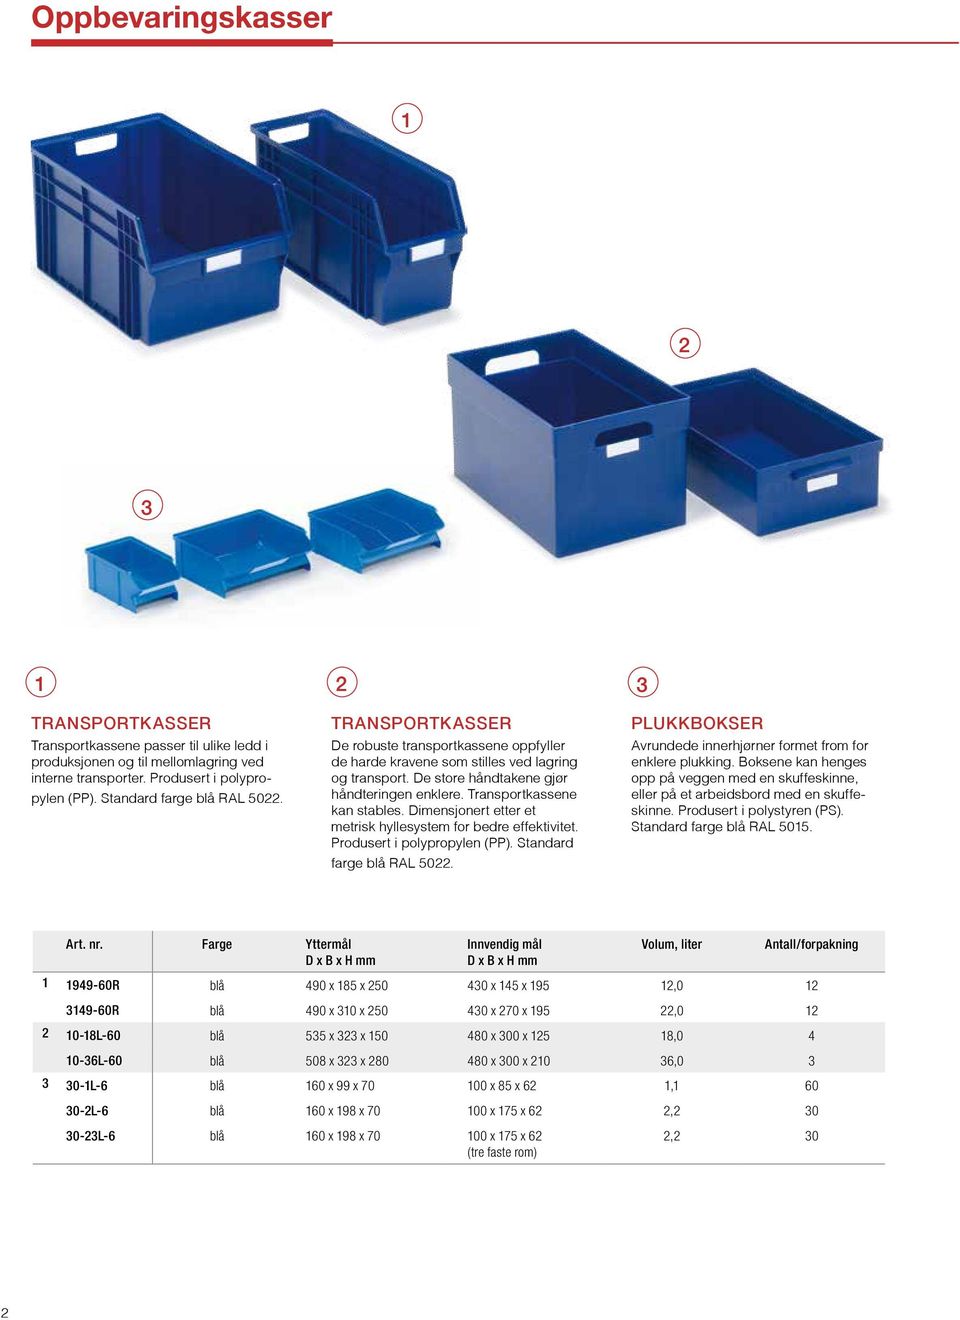 Transport kassene kan stables. Dimensjonert etter et metrisk hyllesystem for bedre effektivitet. Produsert i polypropylen (). Standard farge blå RAL 5022.